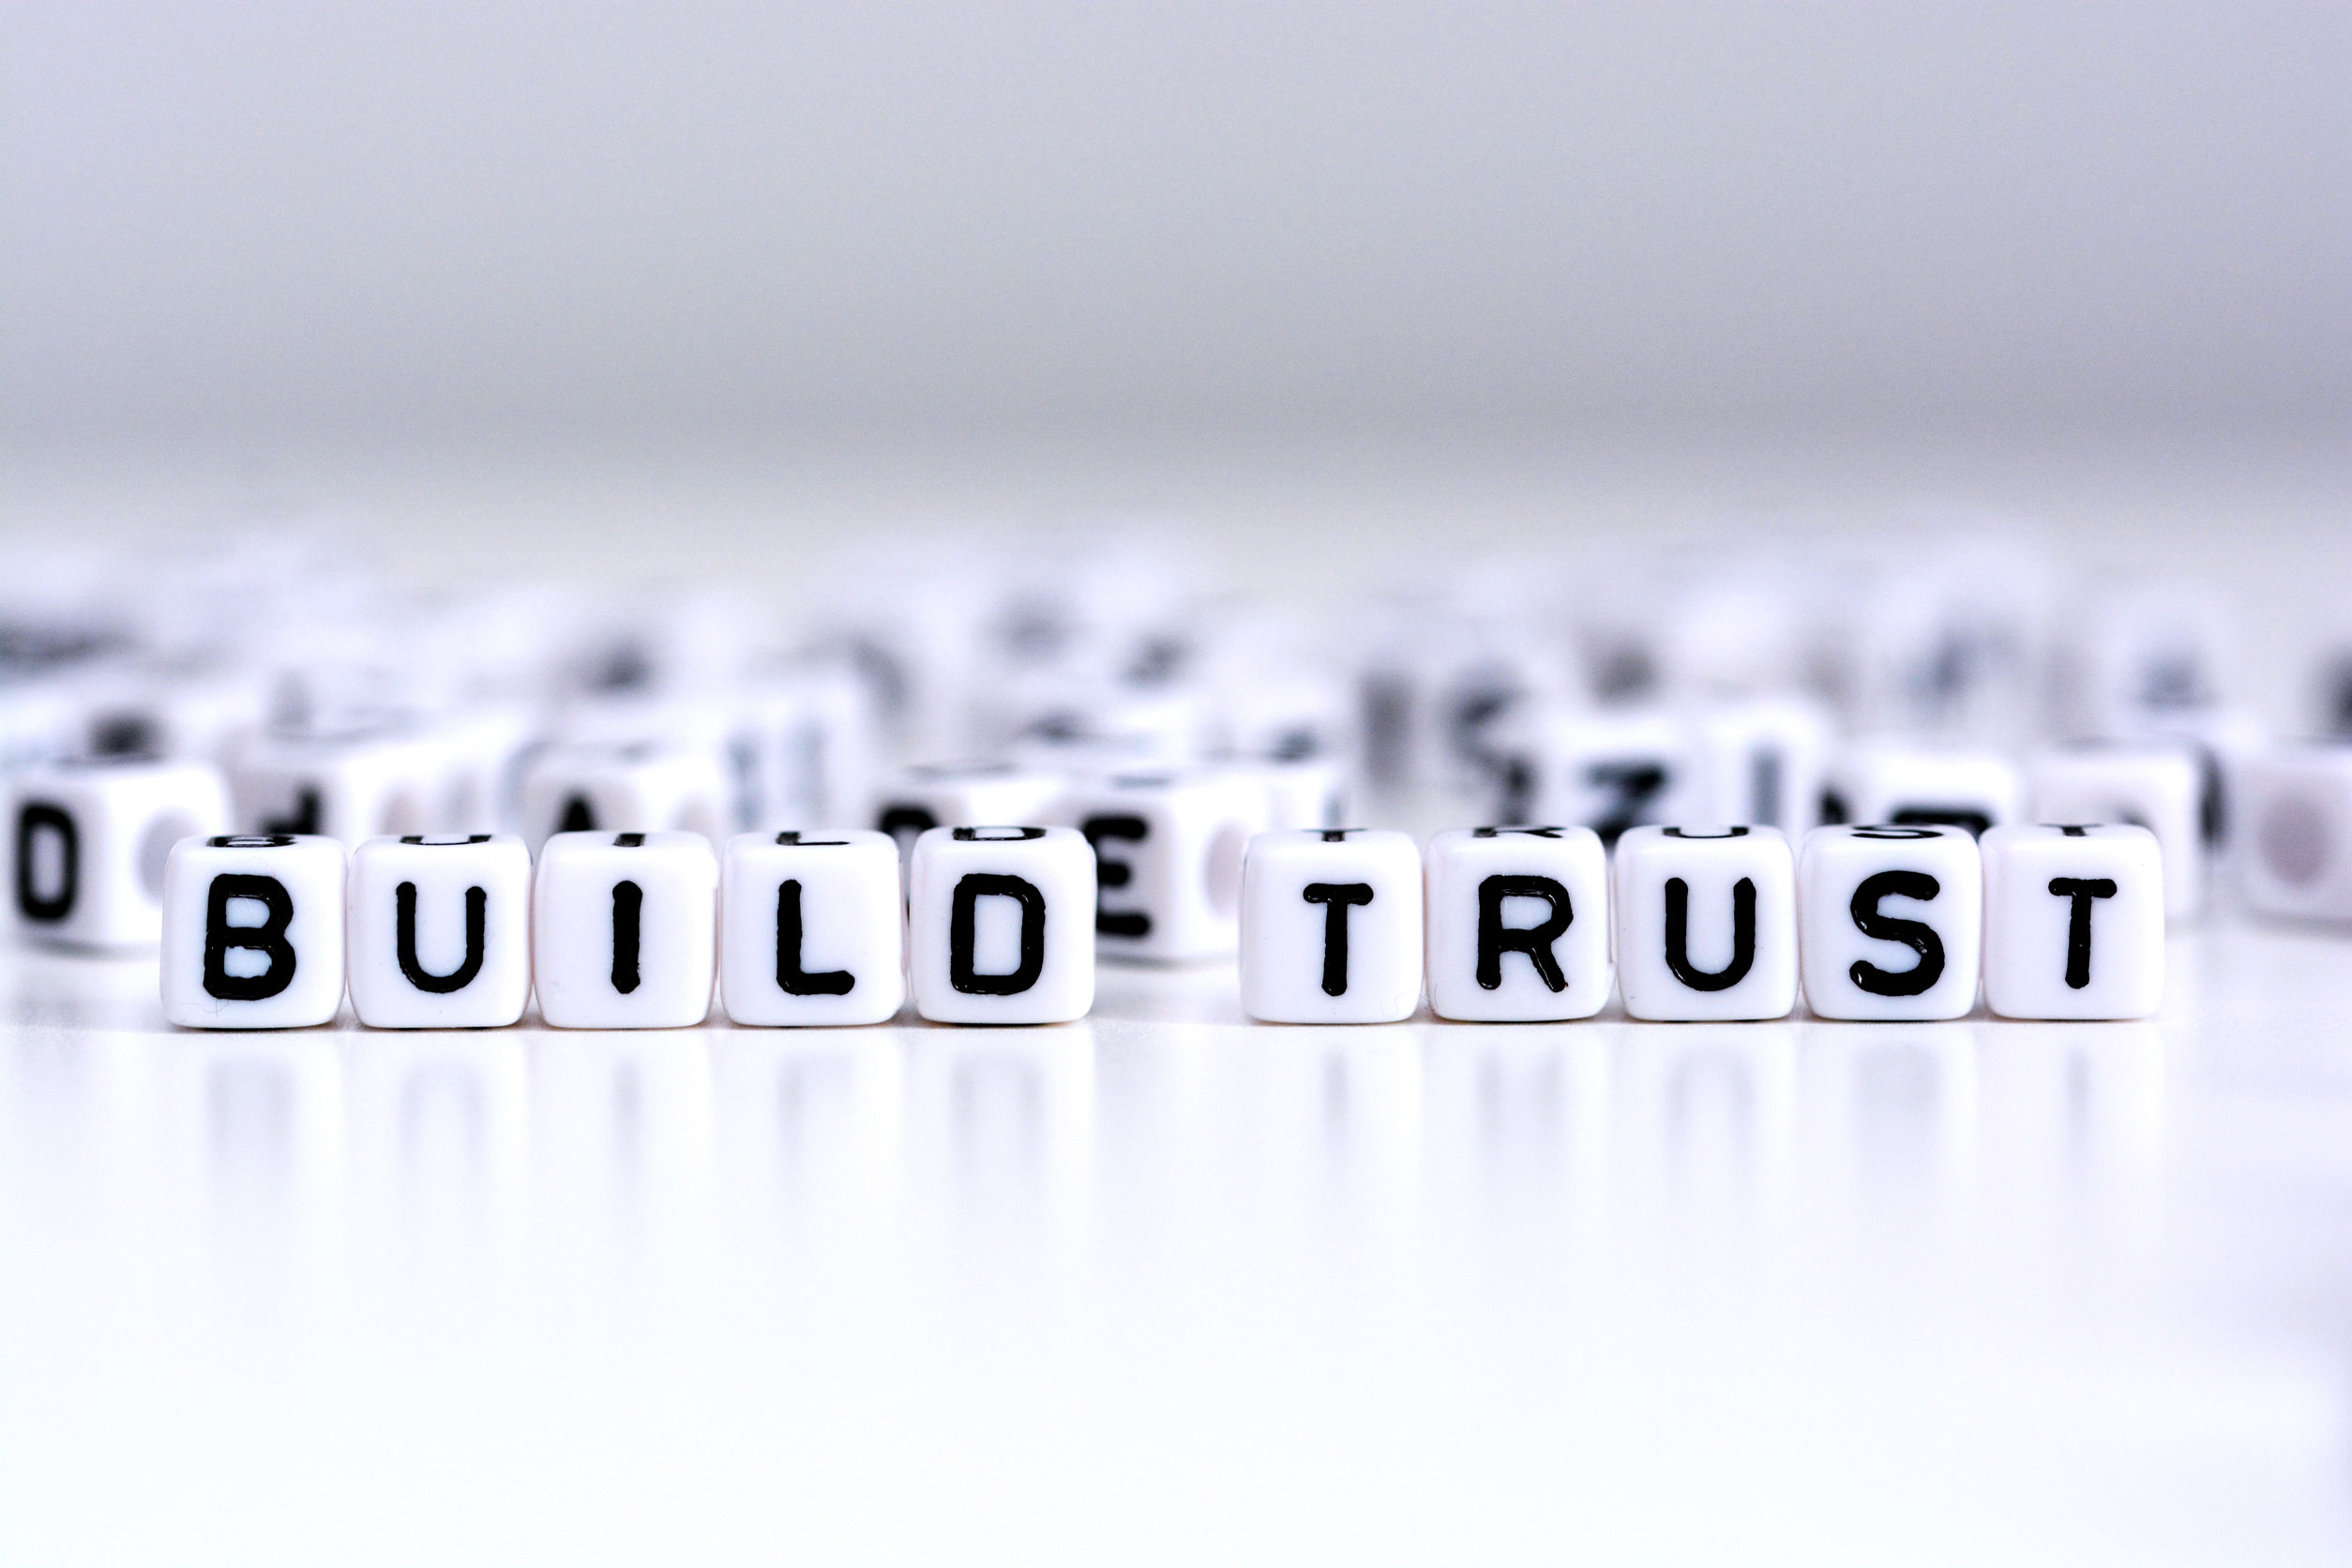 build-trust-crisis-2021